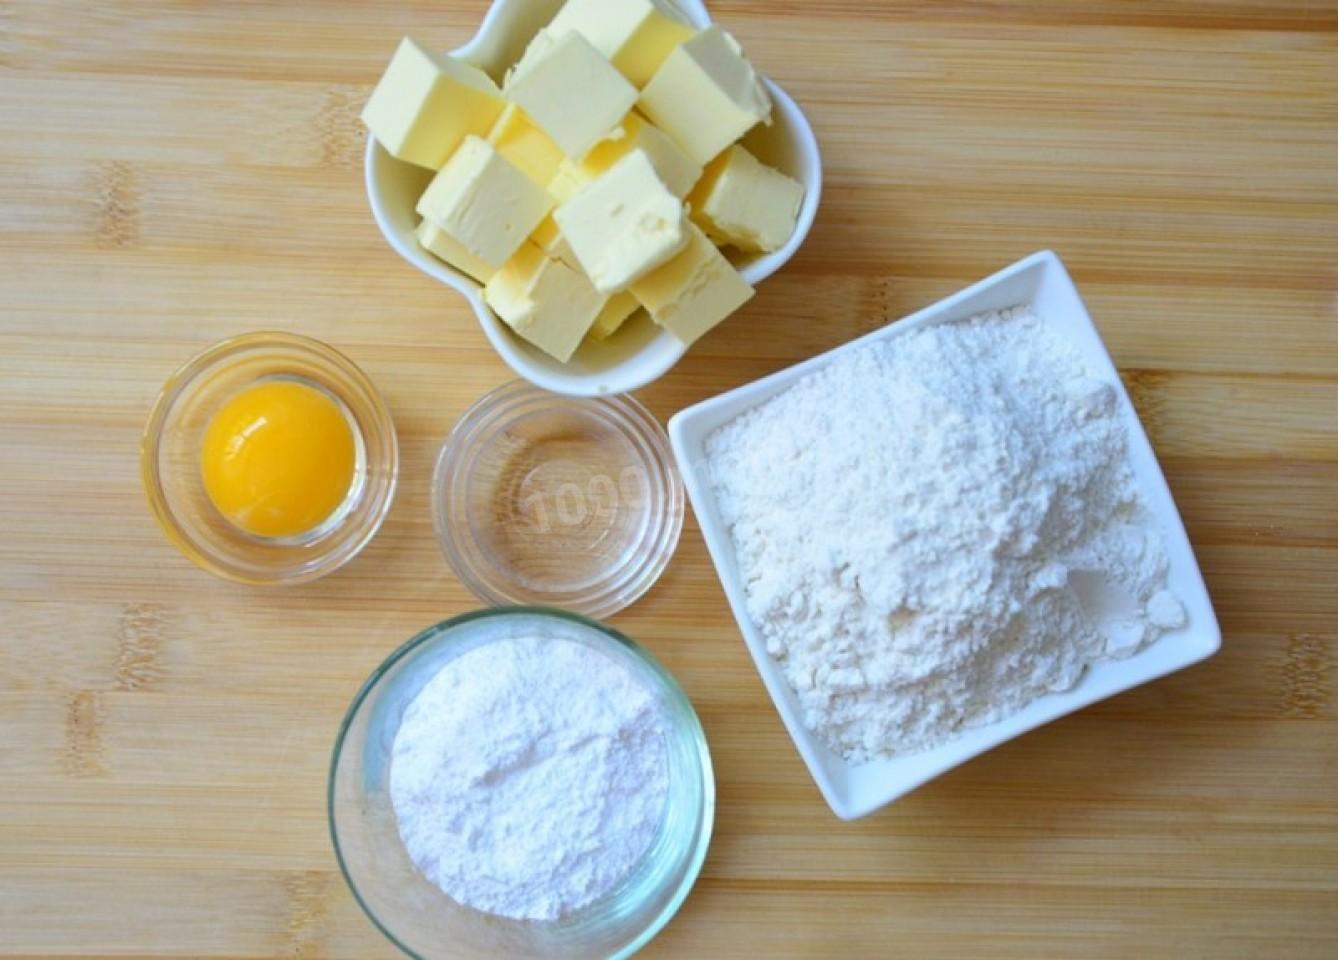 Печенье сливочное масло сахар мука яйца. Ингредиенты для песочного теста. Ингредиенты для печенья. Сырье для песочного теста. Ингредиенты для печенек.